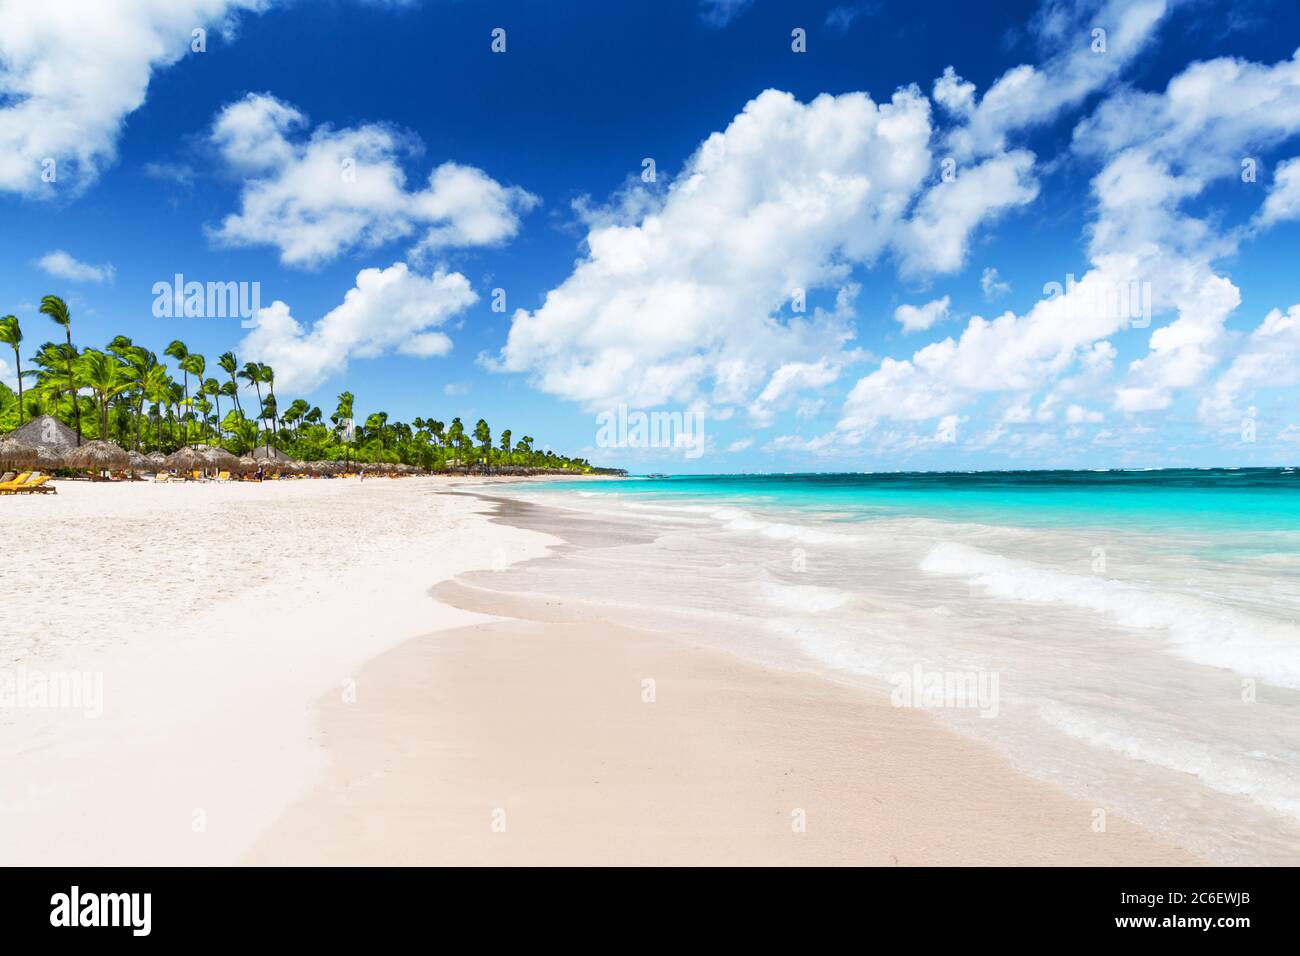 Palmiers à noix de coco sur une plage de sable blanc à Punta Cana, République dominicaine. Concept vacances d'été. Plage tropicale. Banque D'Images